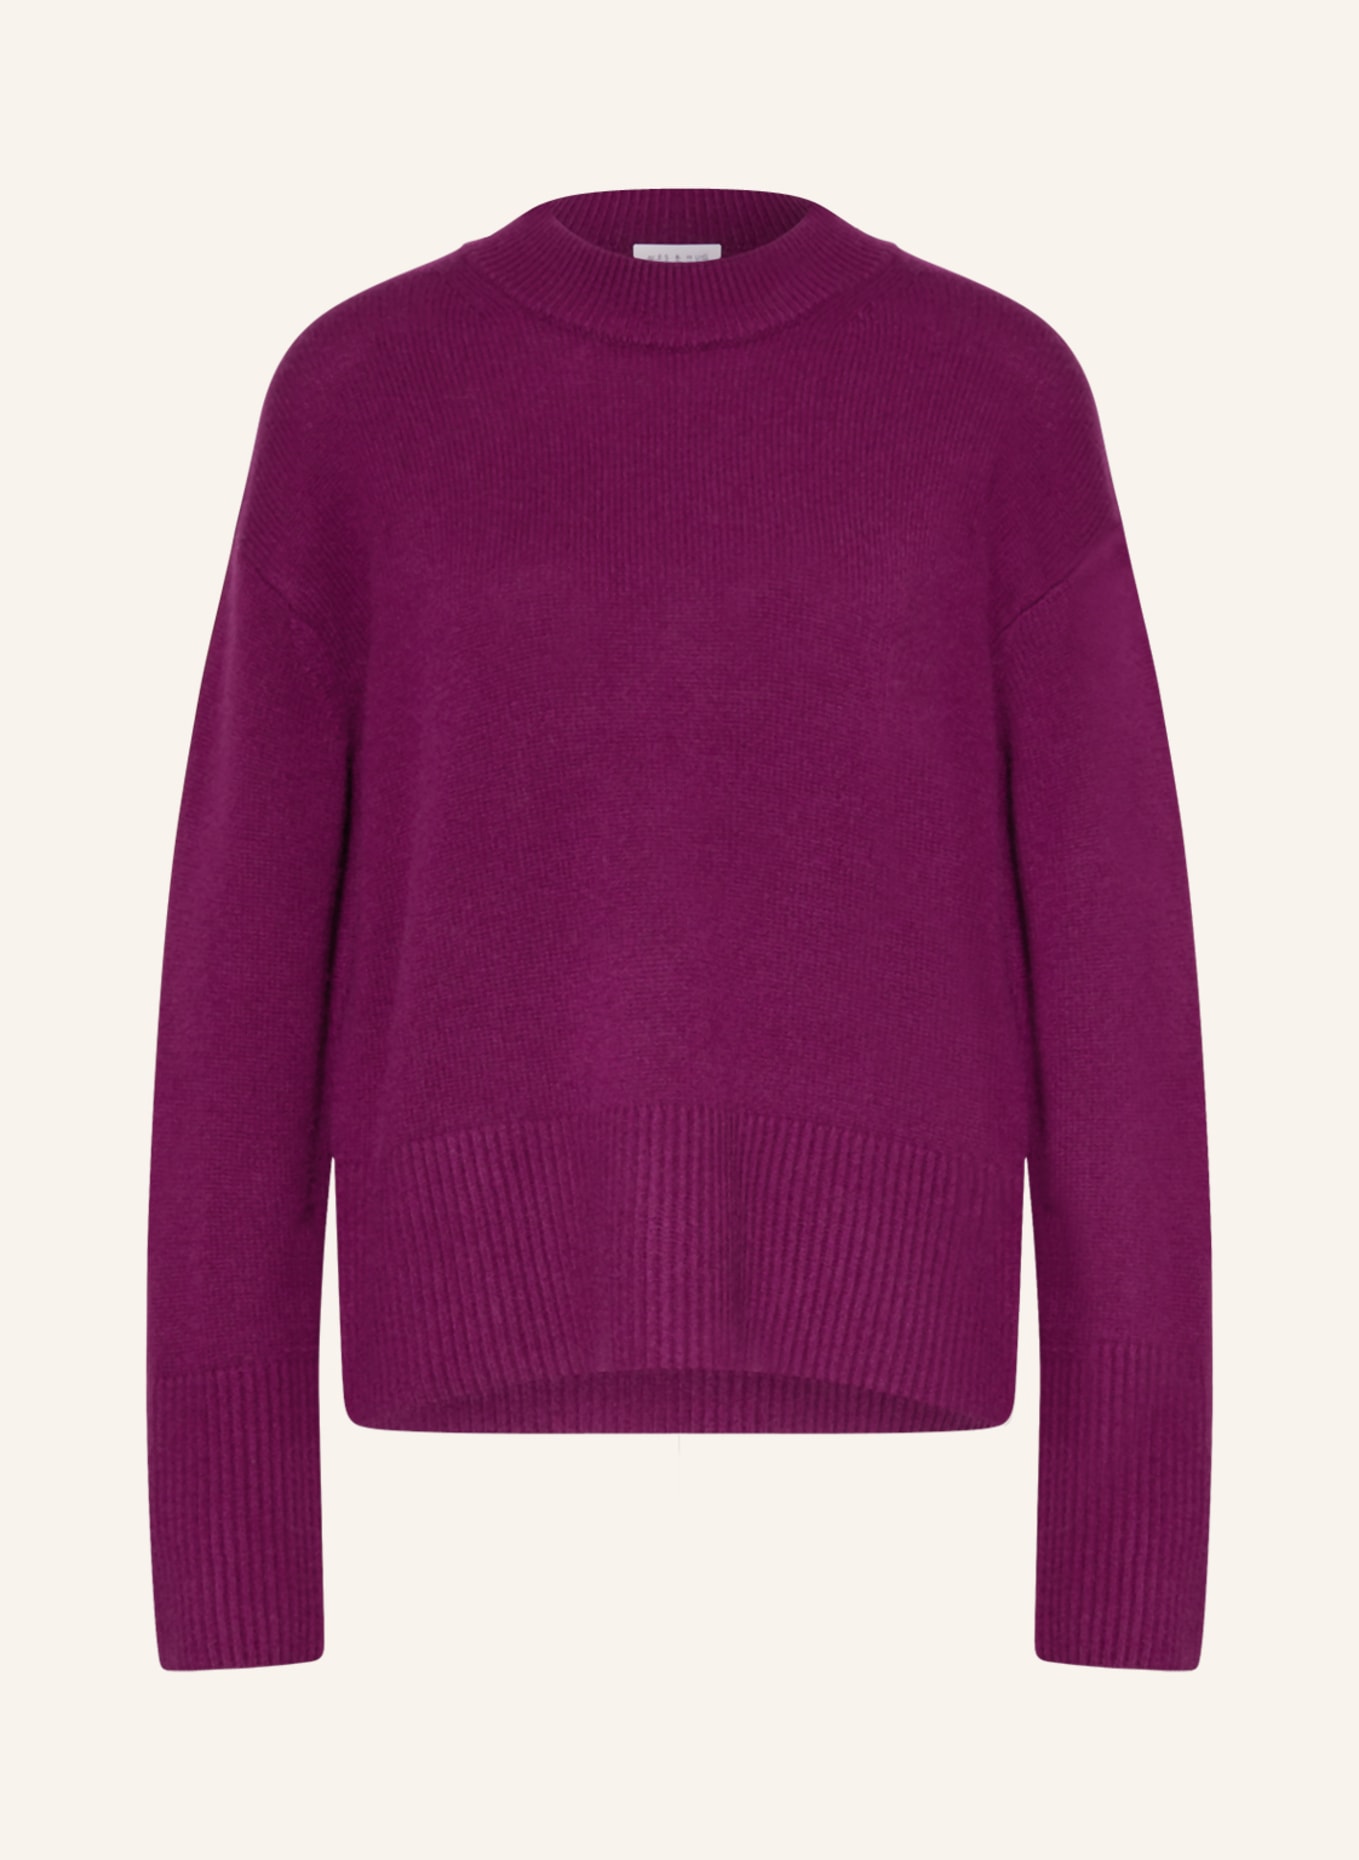 MRS & HUGS Cashmere sweater, Color: DARK PURPLE (Image 1)